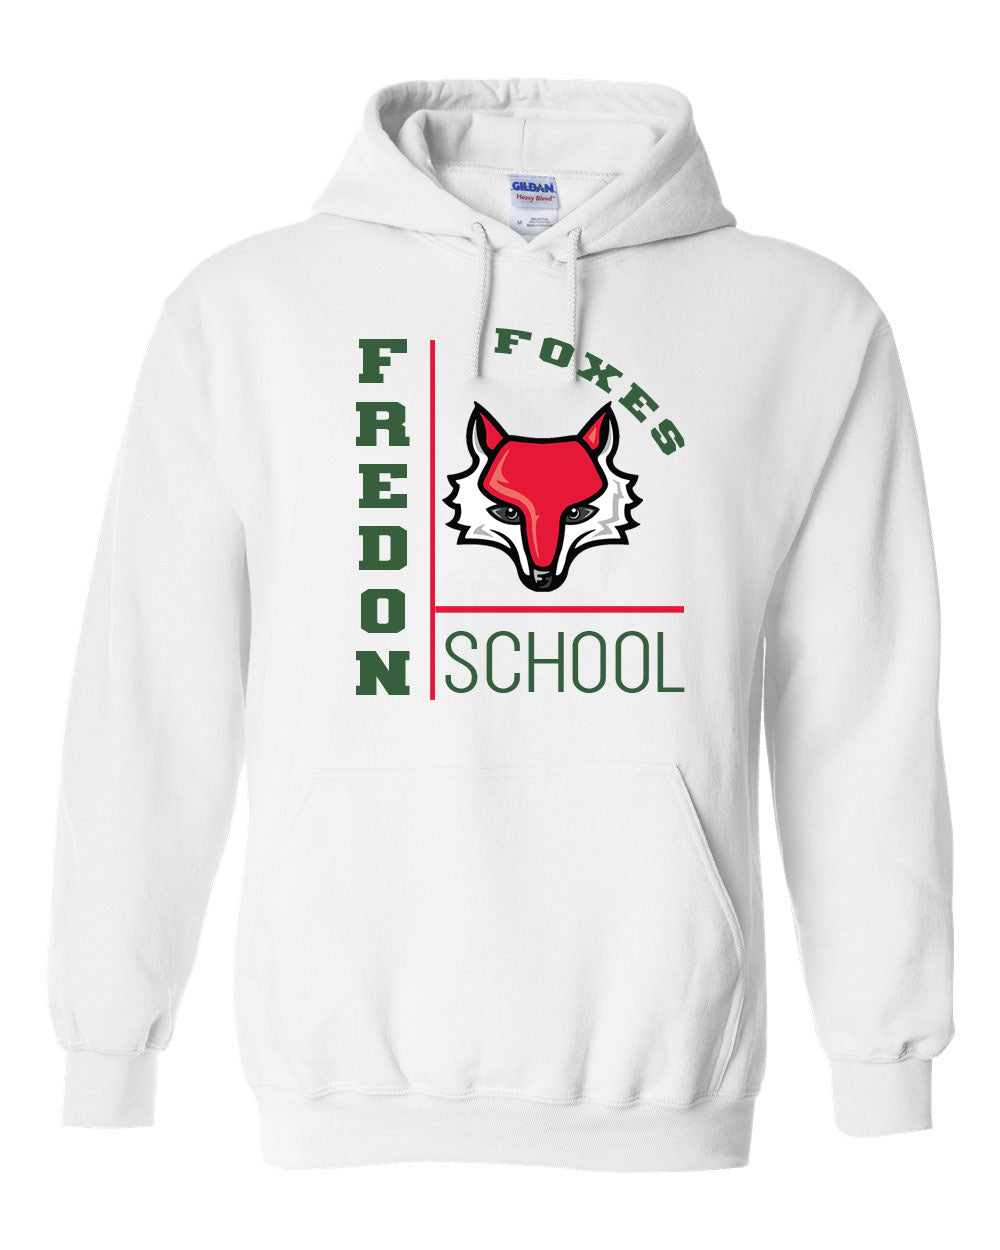 Fredon Design 2 Hooded Sweatshirt